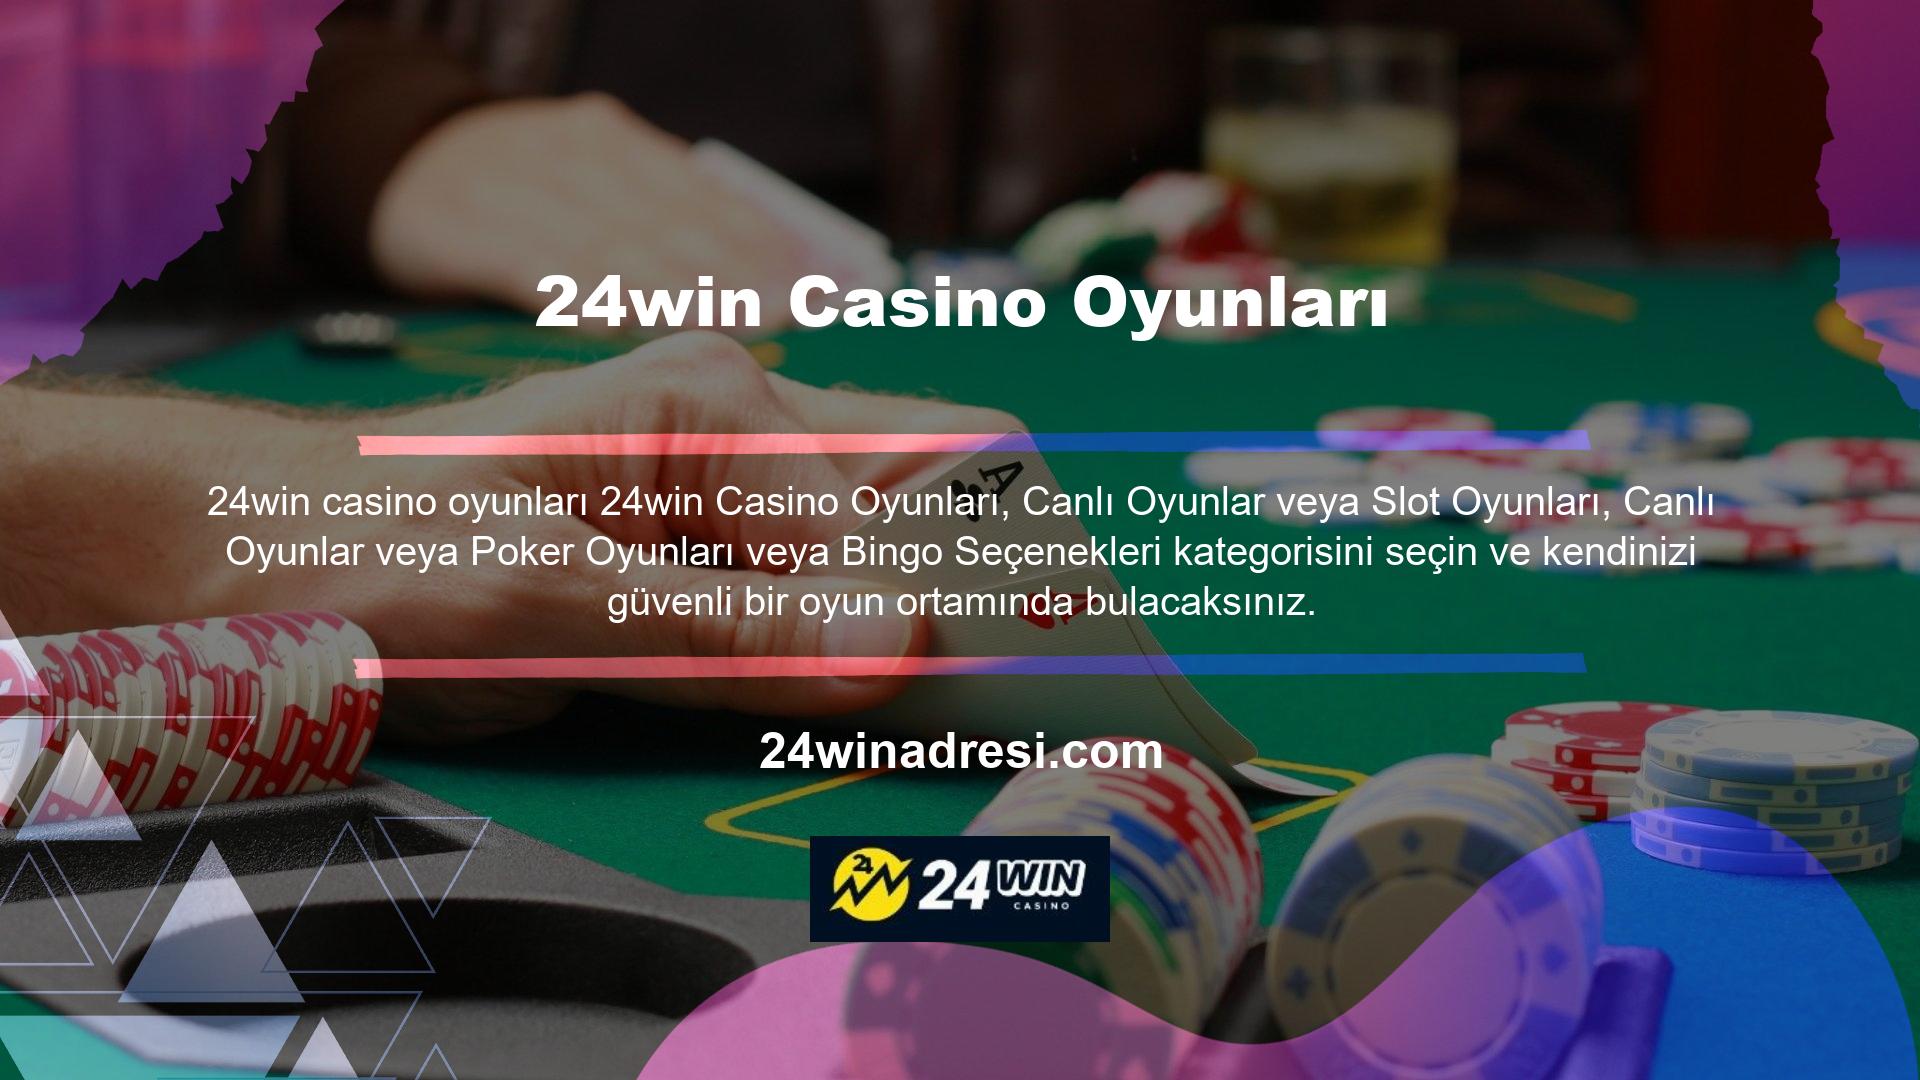 24win Casino oyunlarında hile yapar mı Site ve firma açısından bakıldığında karlılık, onur, itibar ve güven açısından böyle bir sürece gerek olmadığını görmekteyiz